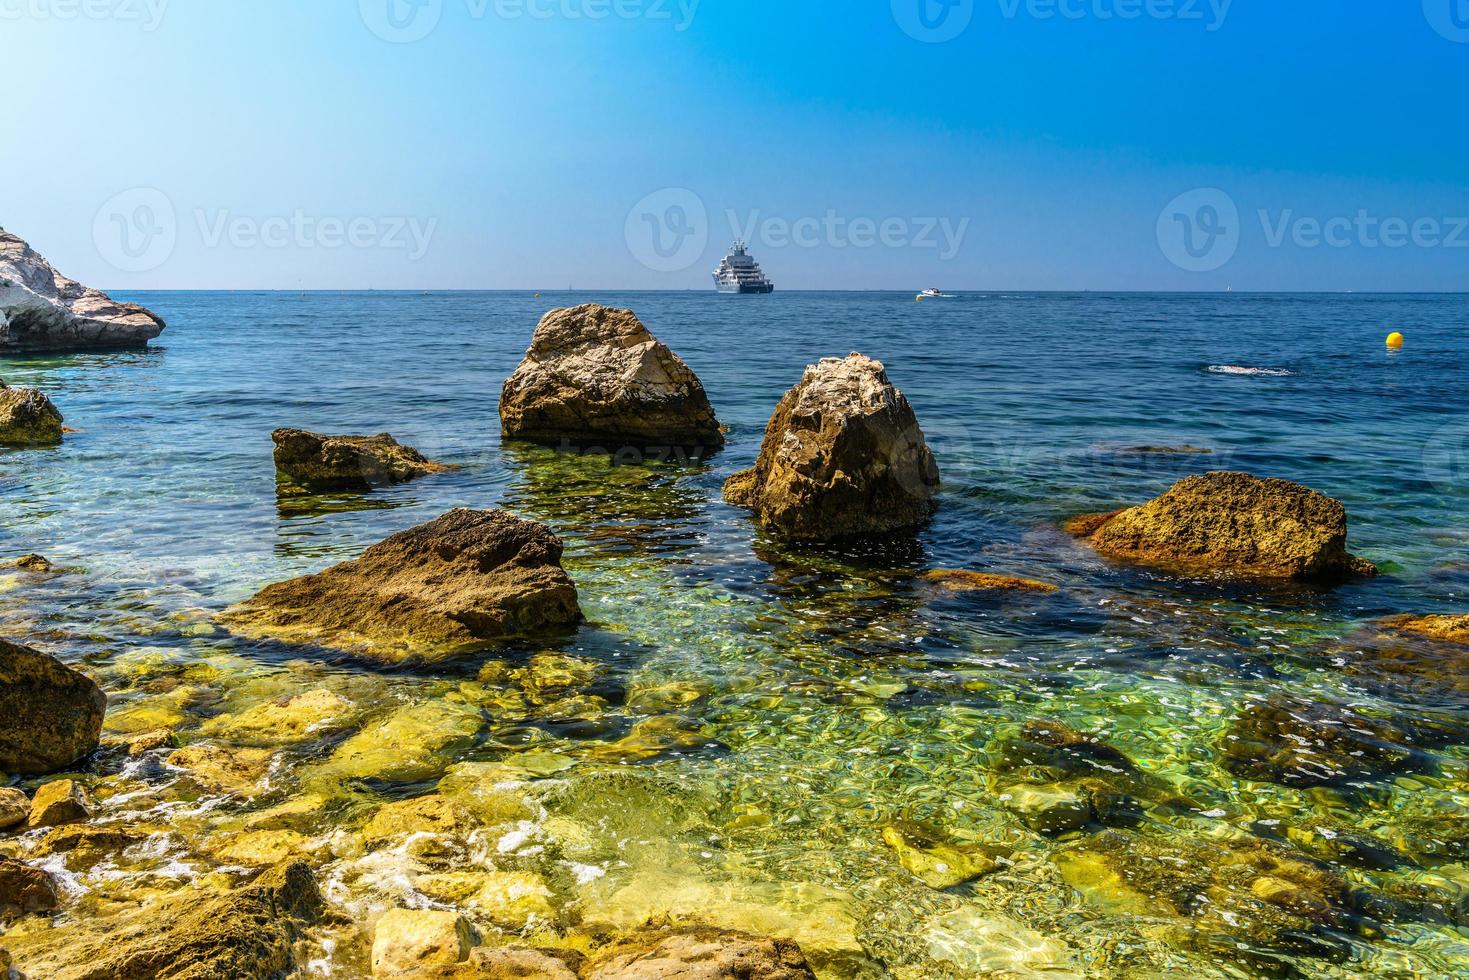 plage de la mer avec des pierres et des rochers, beausoleil, nice, nizza, alpes-maritimes, provence-alpes-cote d'azur, cote d'azur, french riviera, france photo